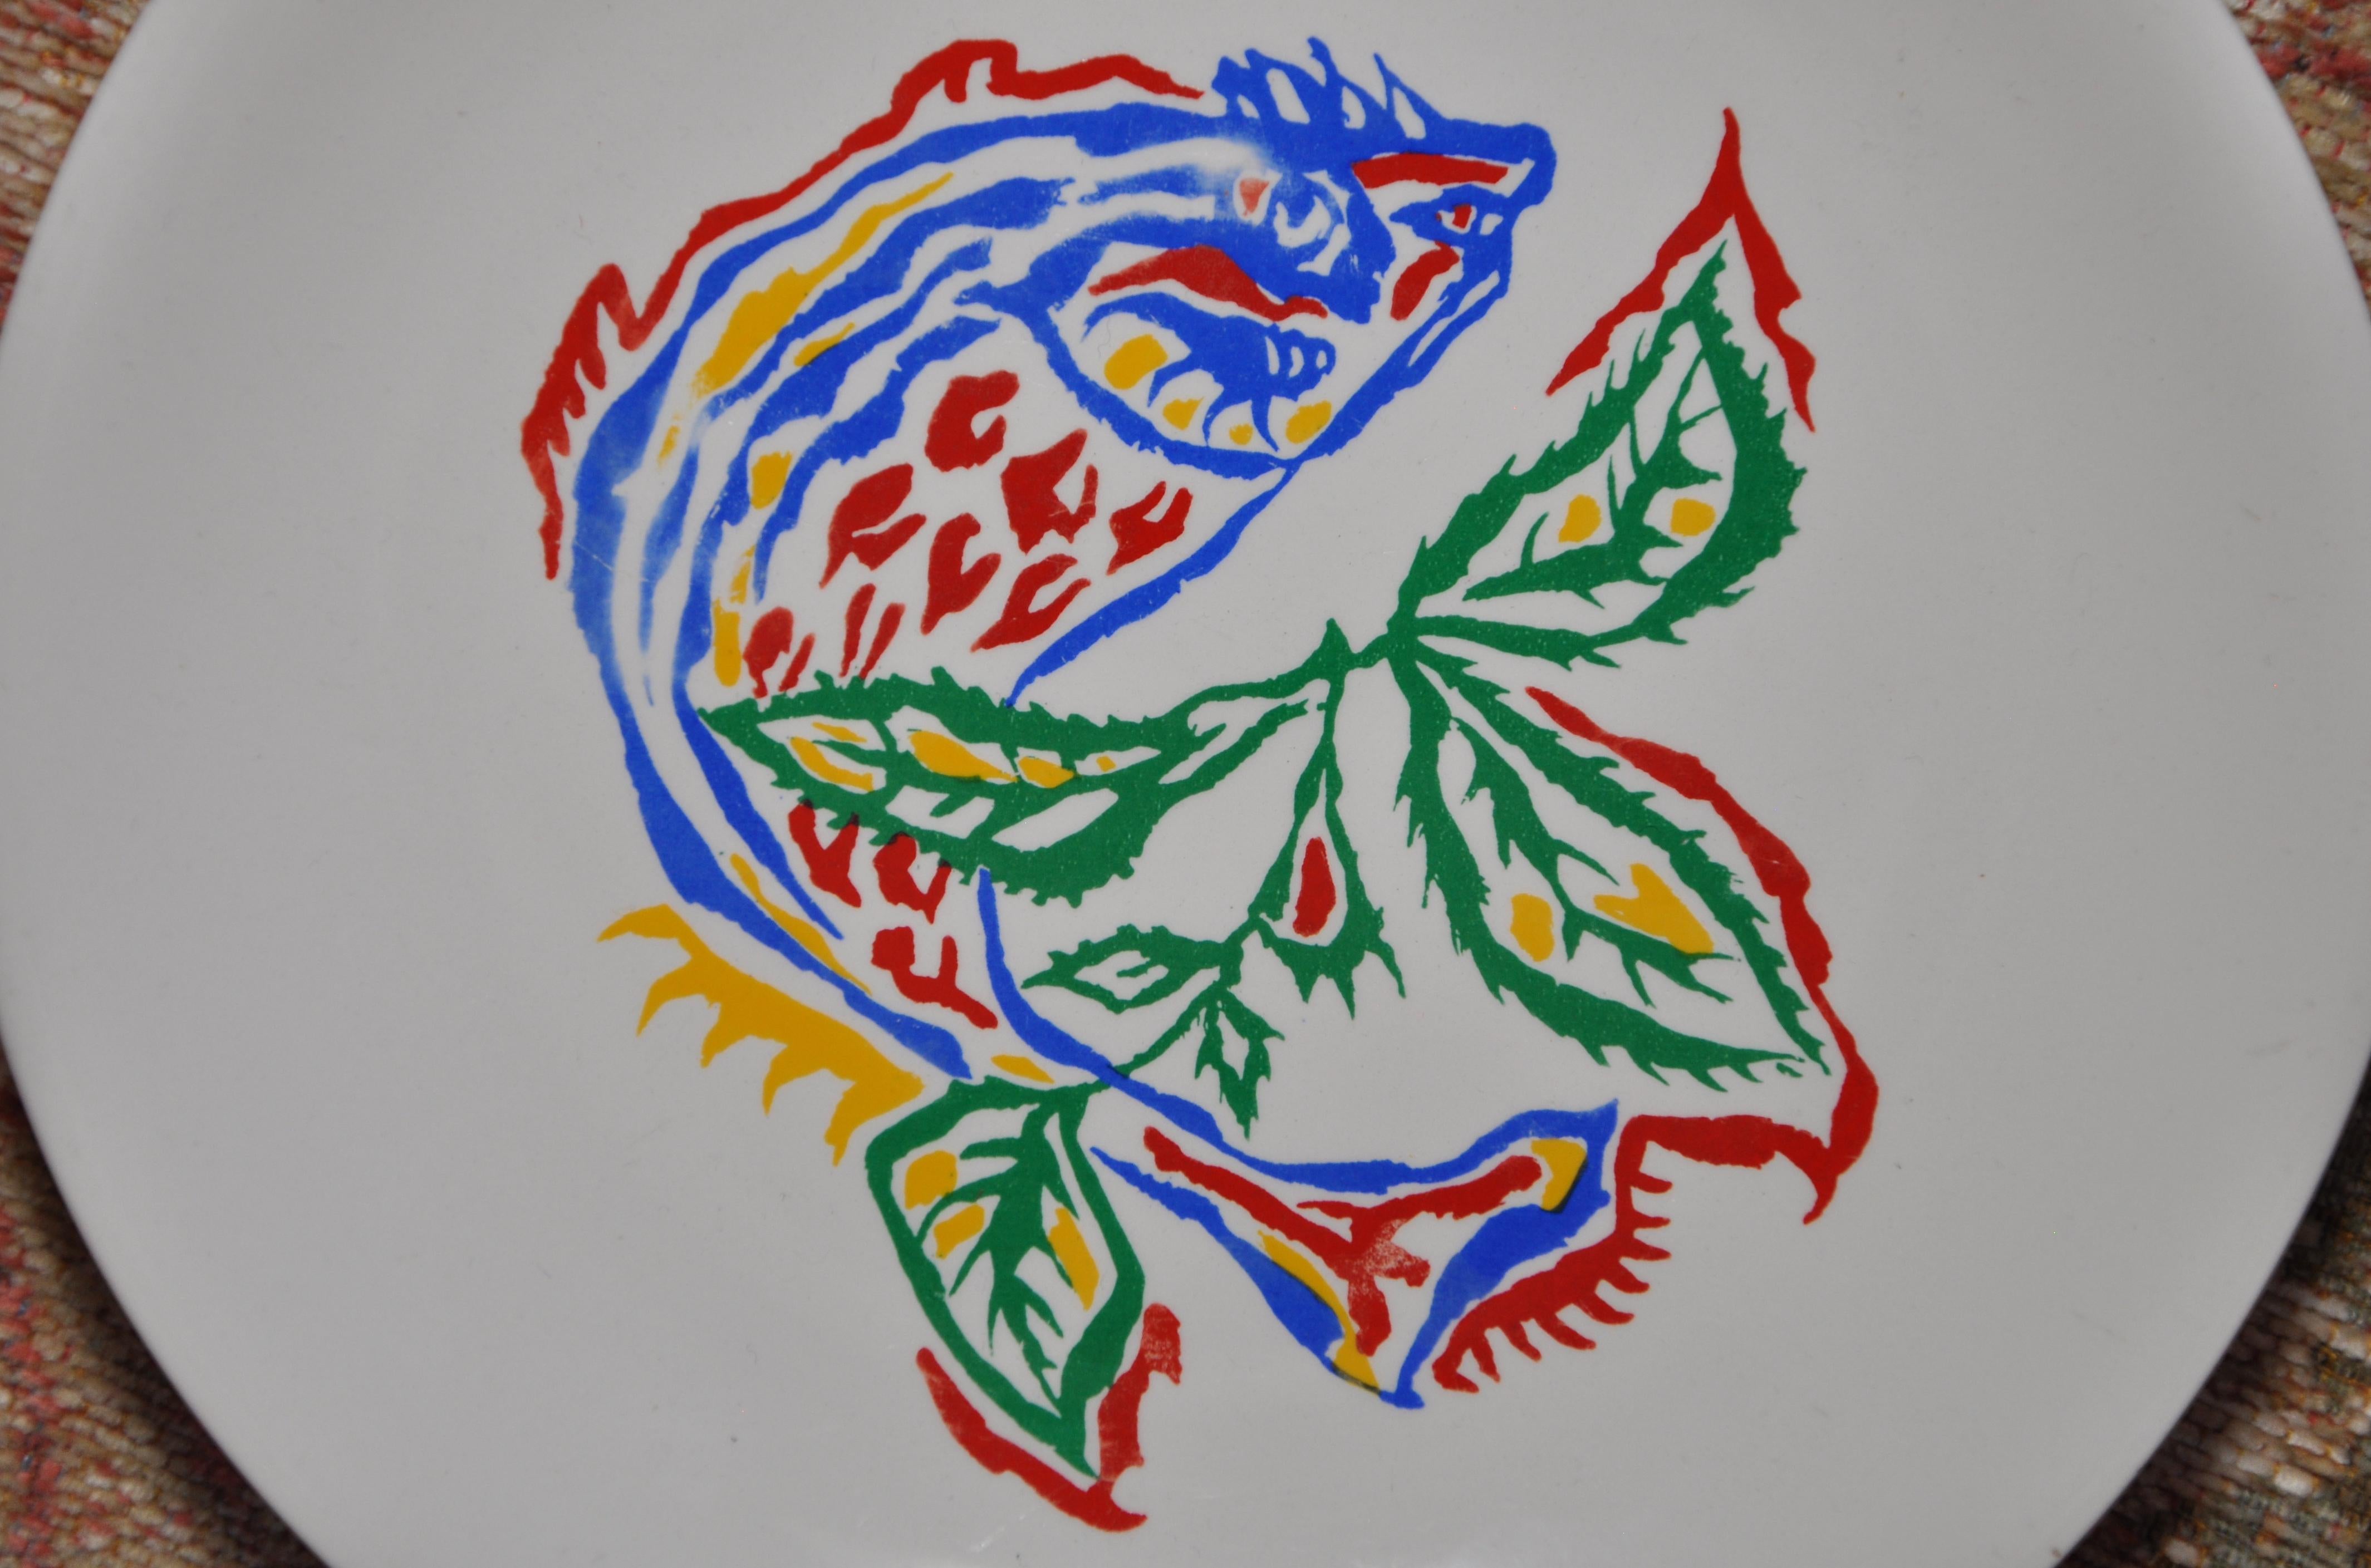 Assiette en céramique de style Mid-Century Modern du designer Jean Lurçat, avec un transfert d'impression multicolore représentant un poisson. 
Peintre important et prospère de l'École de Paris, connu pour avoir, à lui seul, relancé la tapisserie en